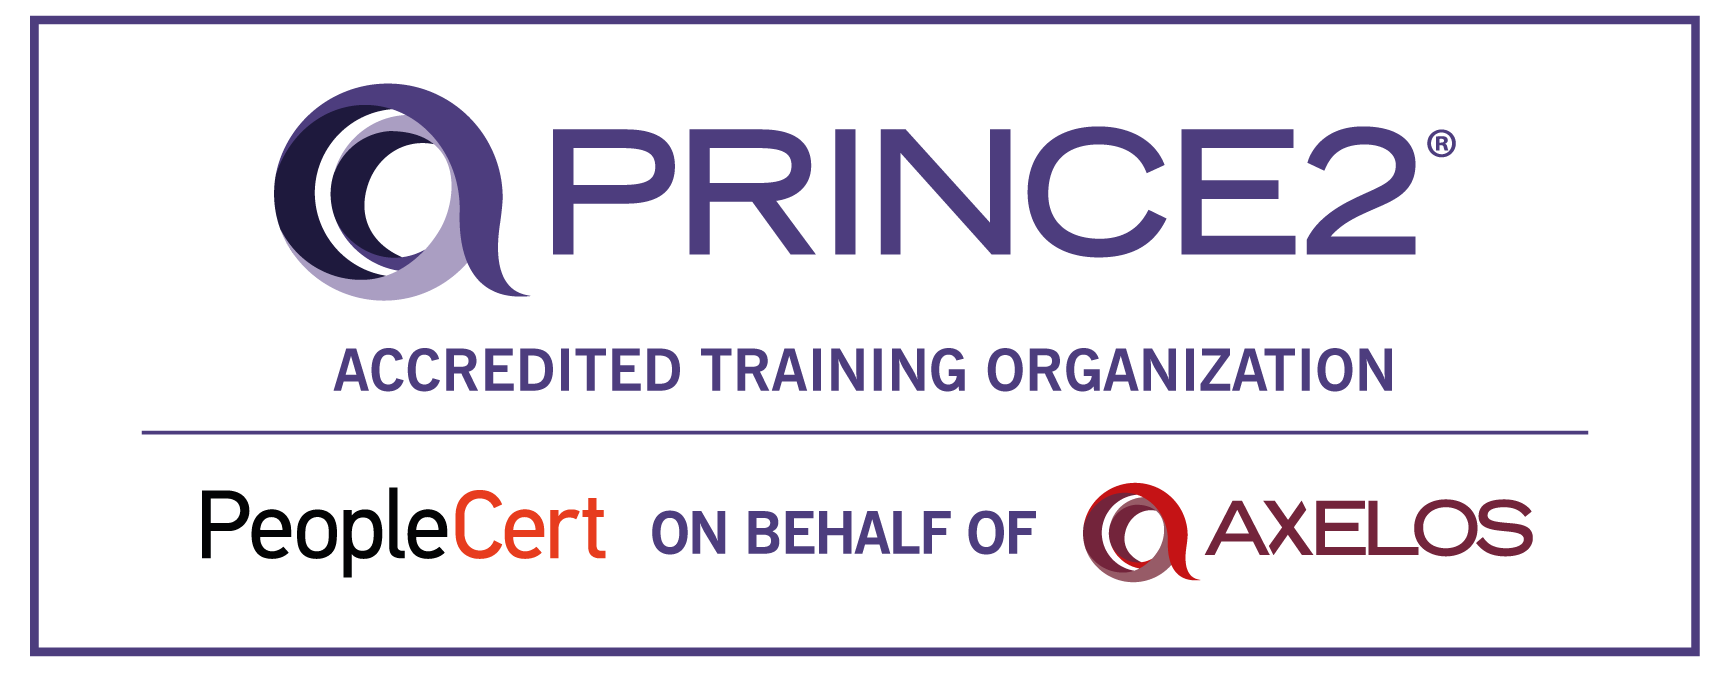 Prince2 Ato Logo (1)